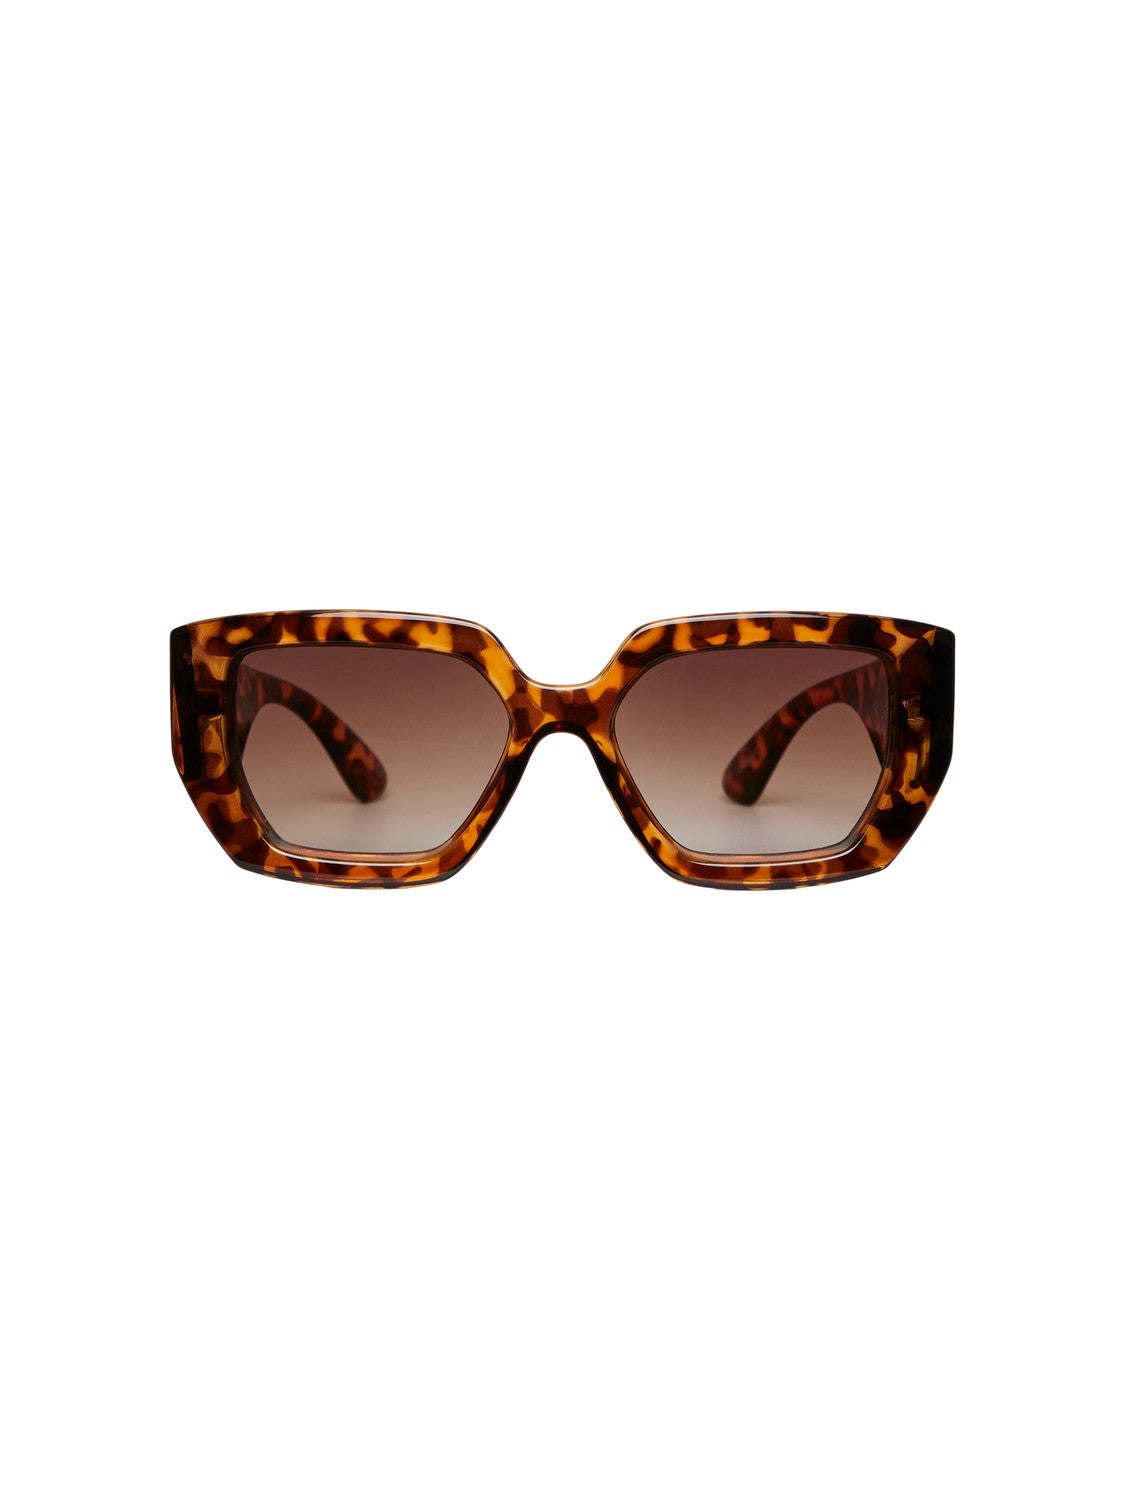 Sienna Sunglasses (Black/Turtle)